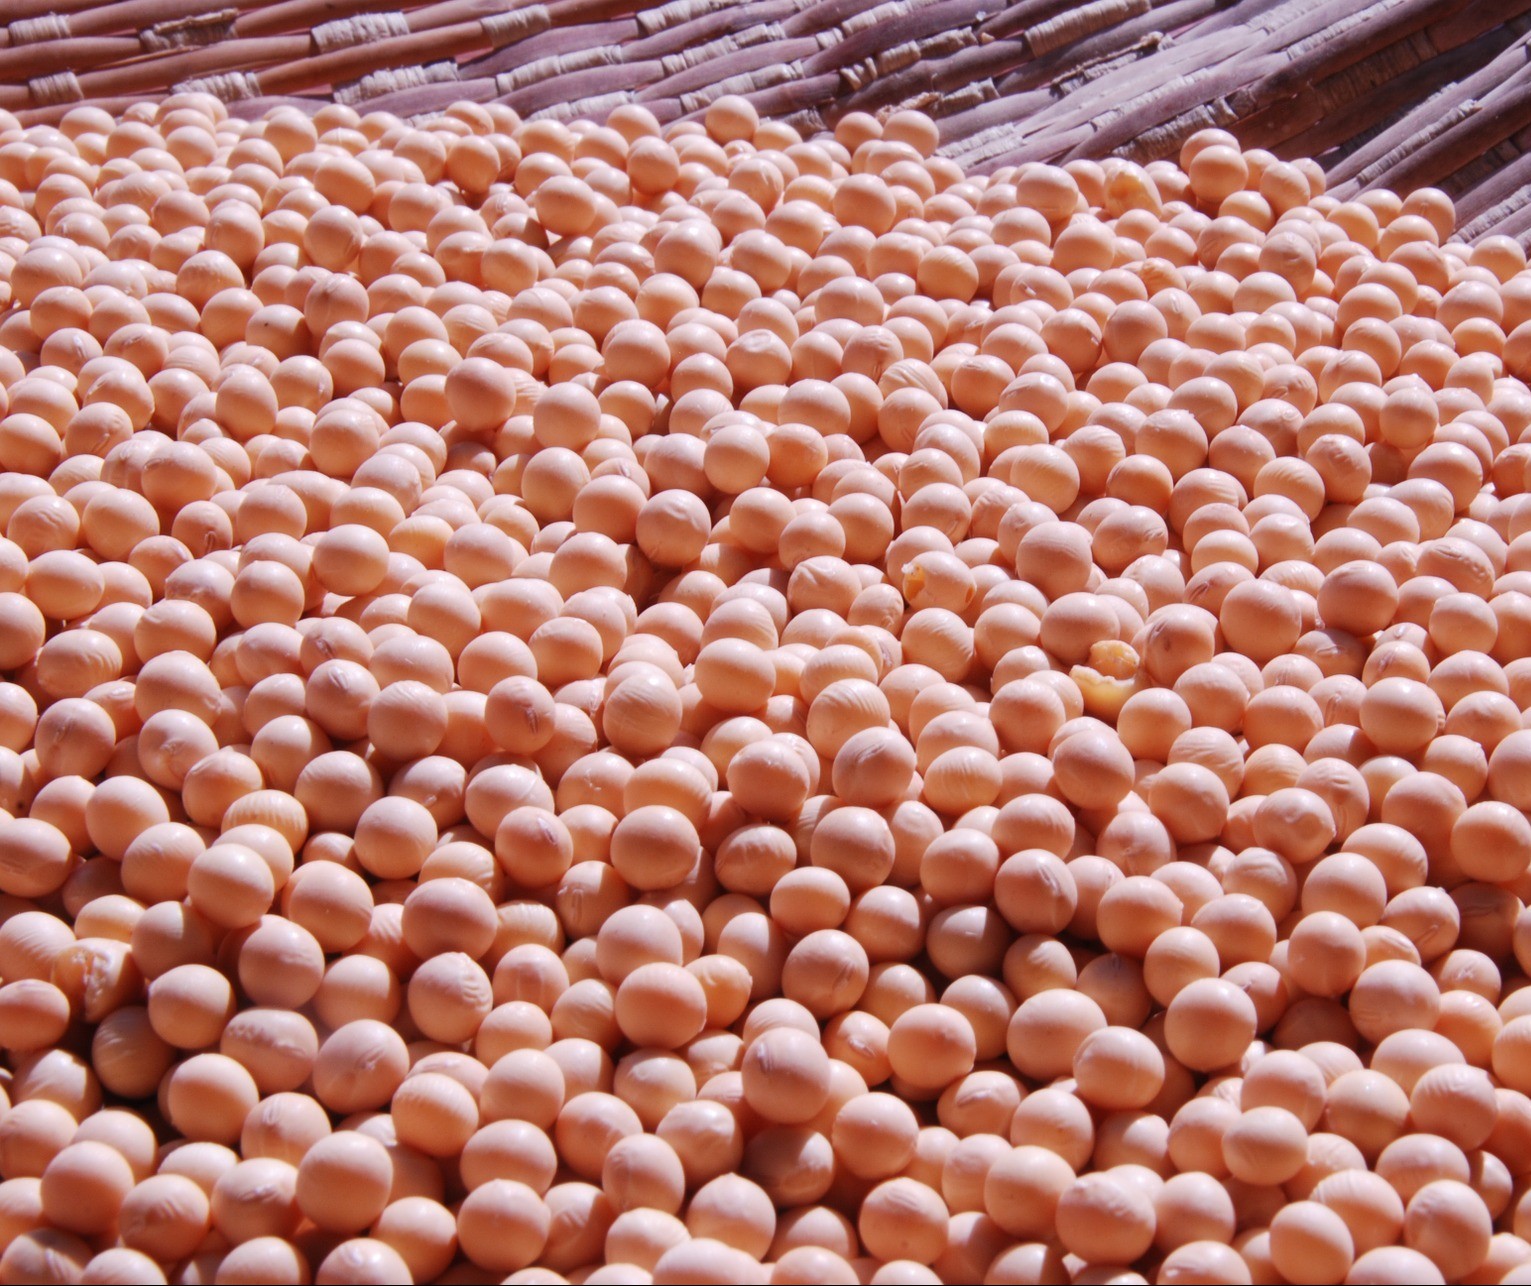 Brasil pode produzir até 133,4 milhões de toneladas de soja, diz consultoria